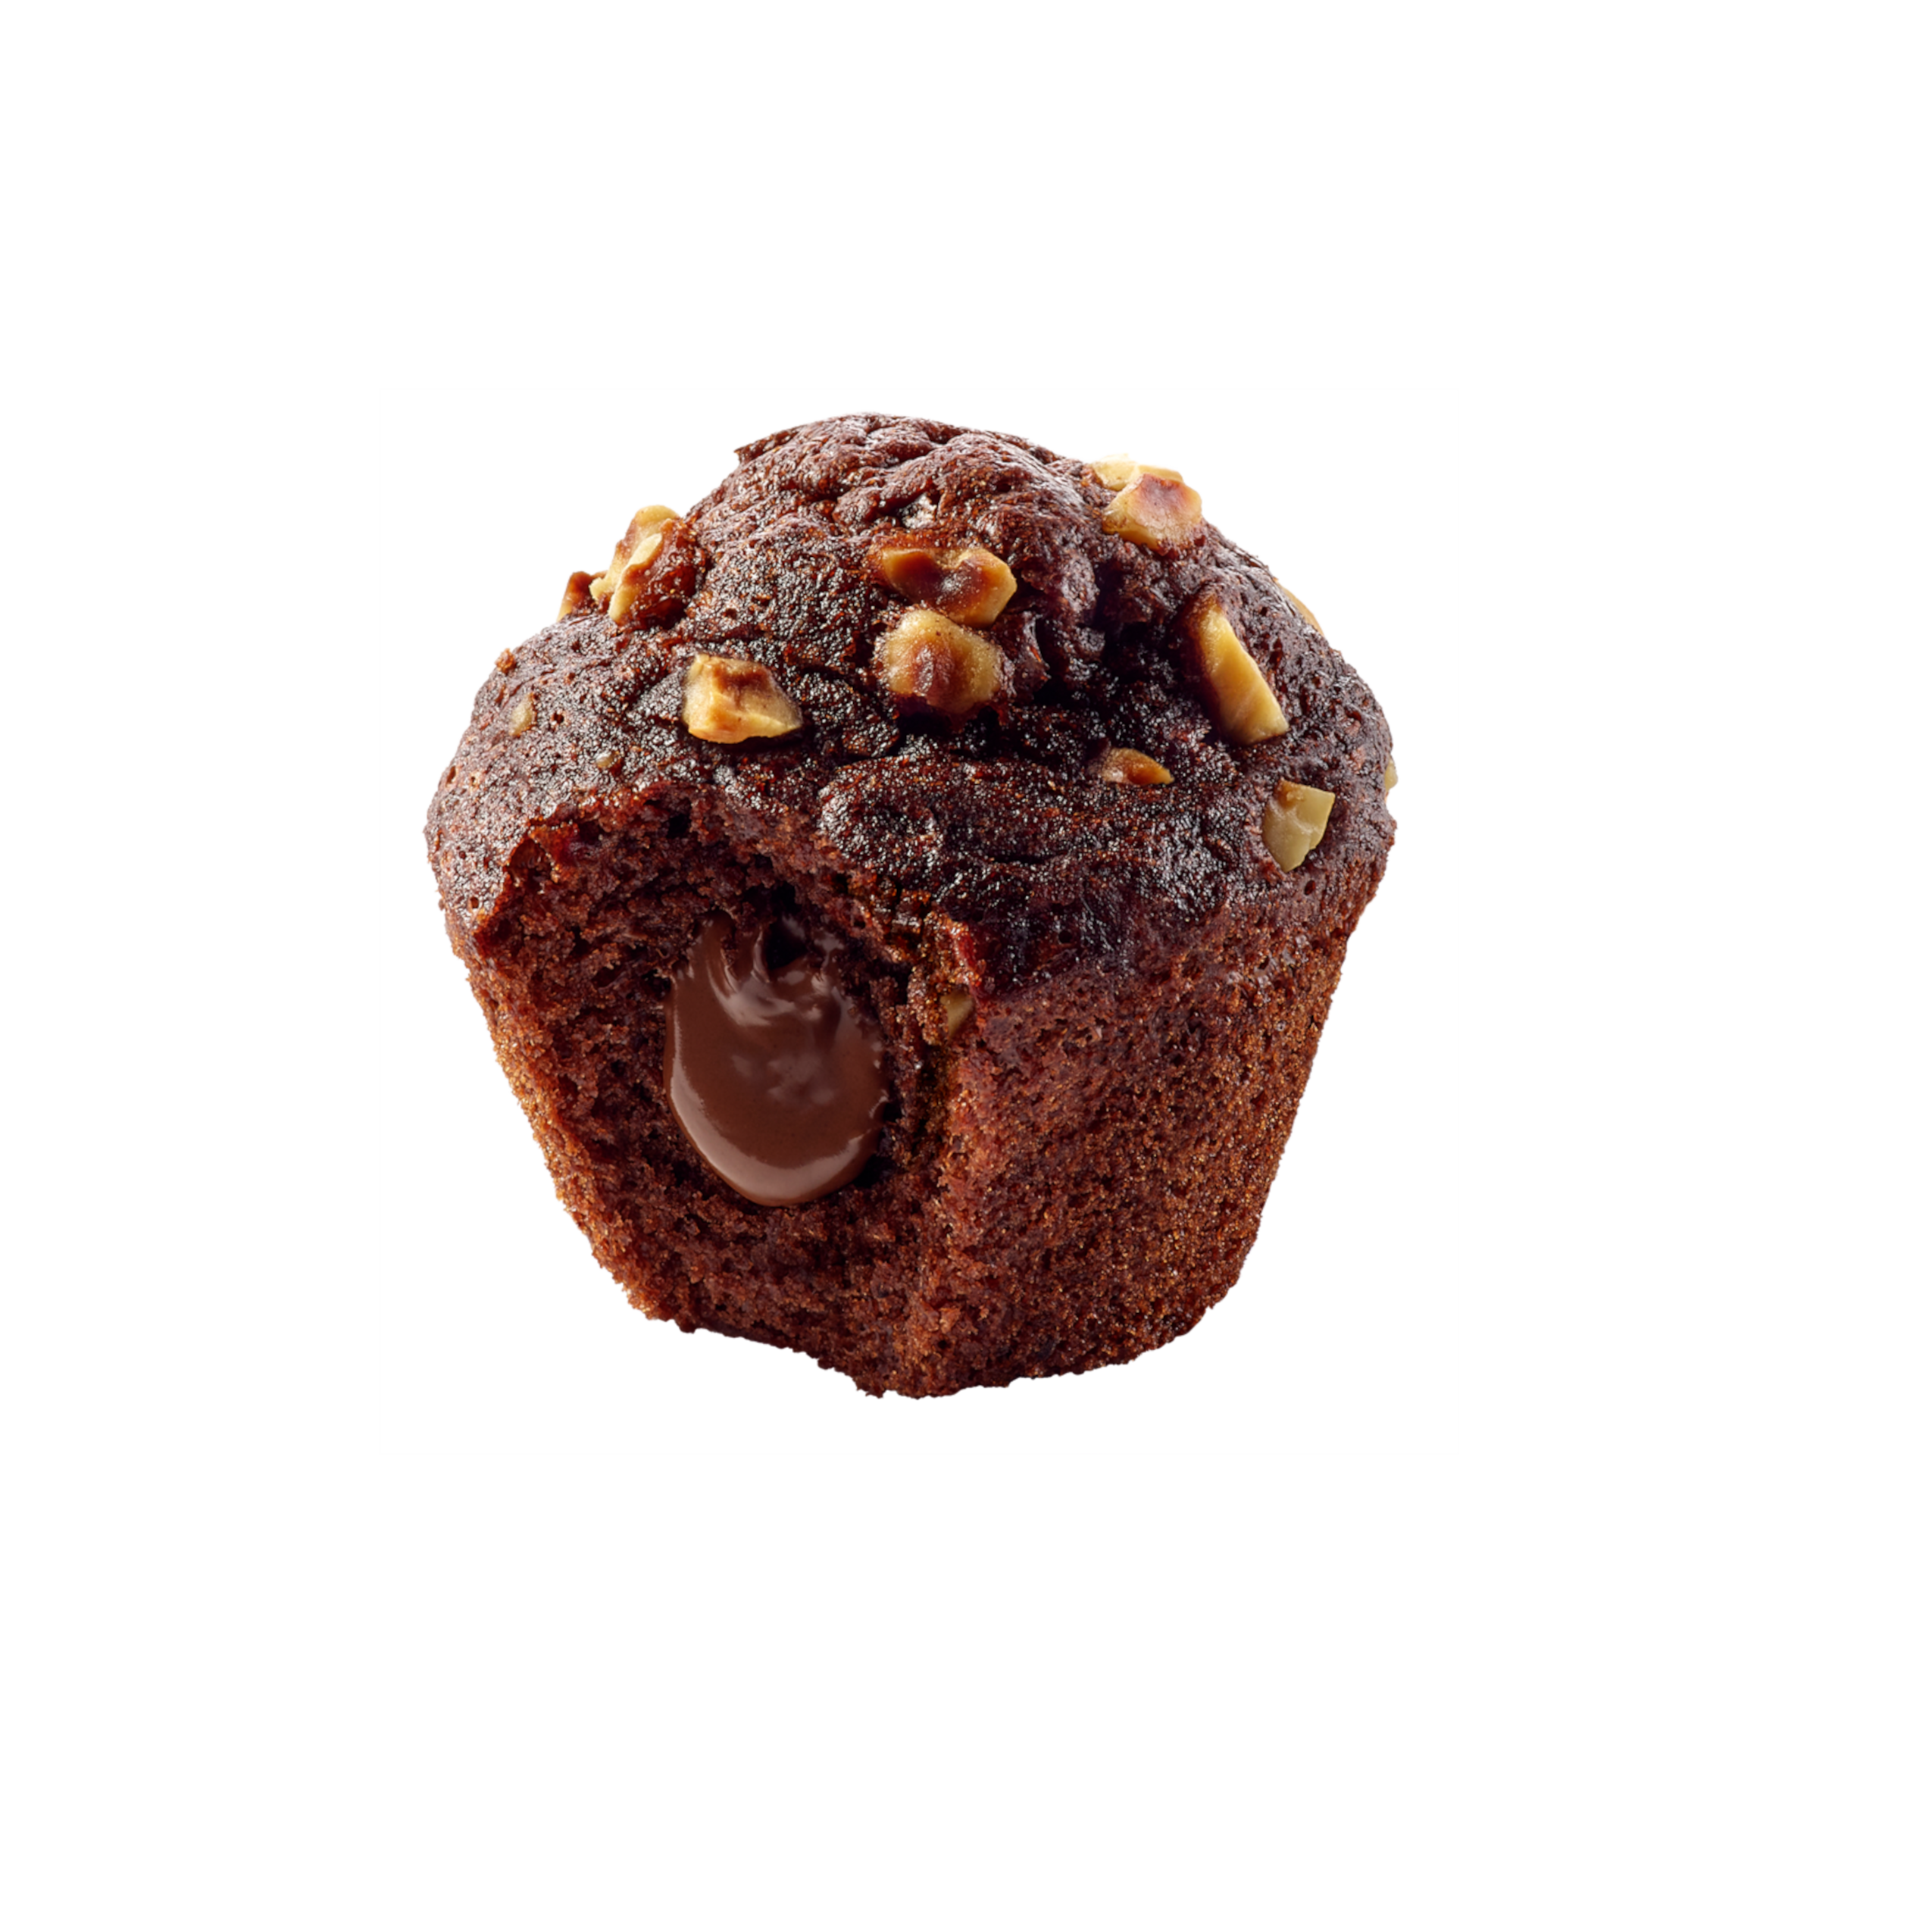 Mes Muffins au Chocolat coeur Cacao-Noisette & Eclats de Noisettes | Ker Cadélac